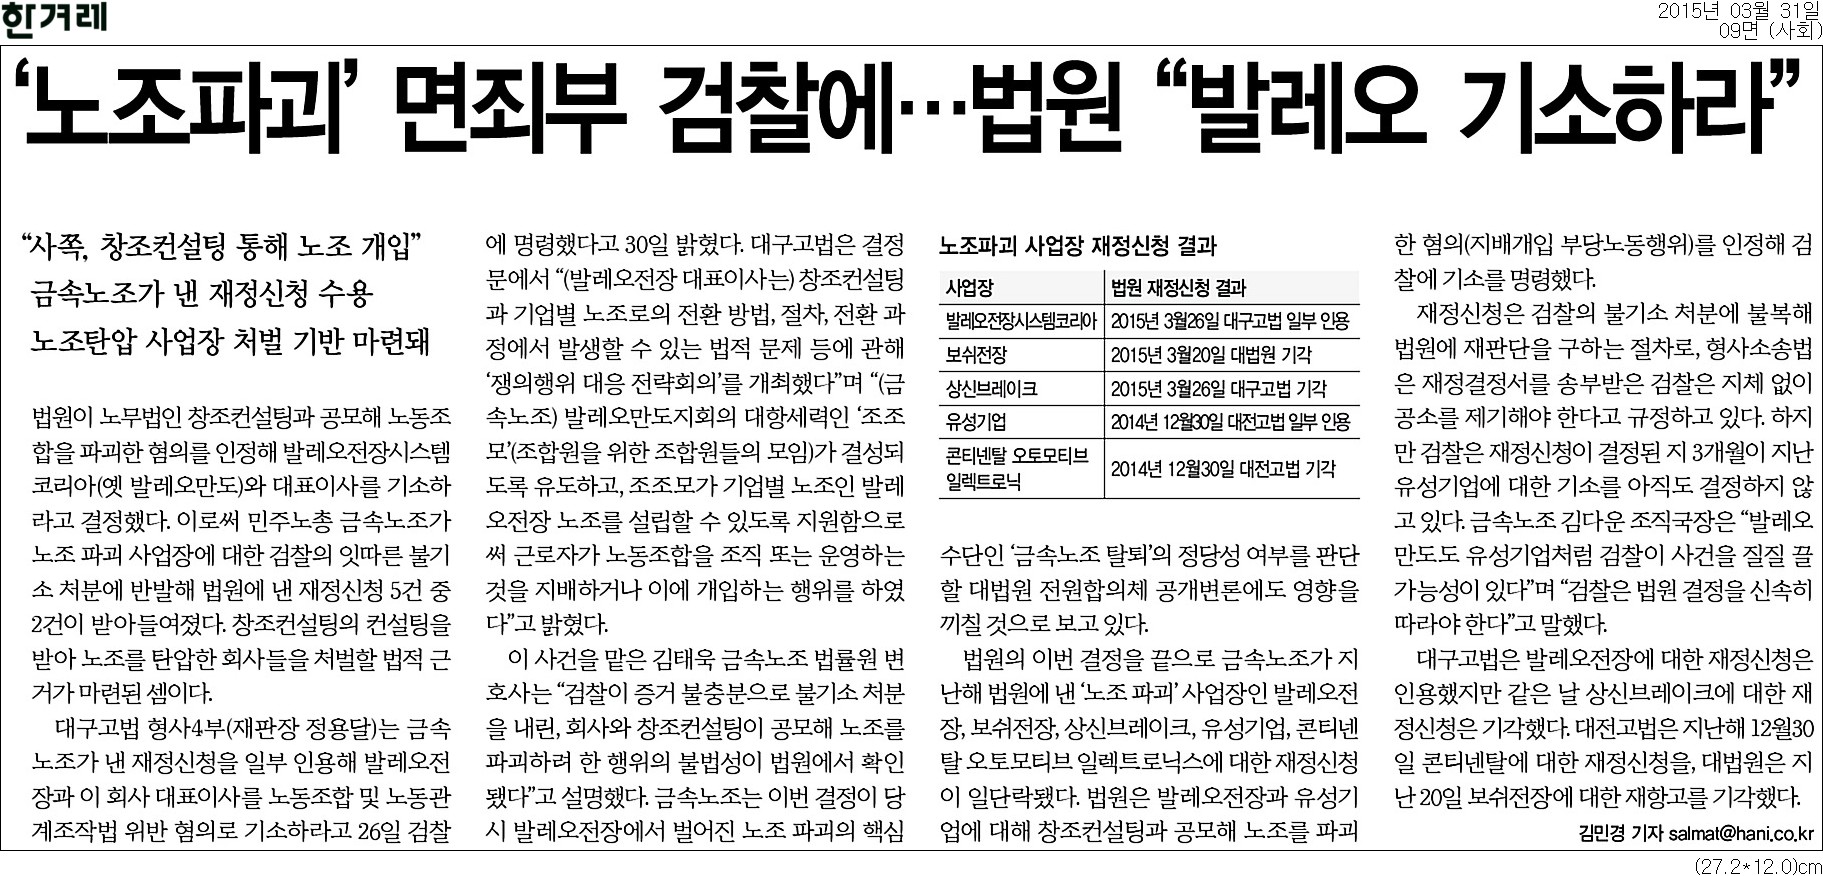 <한겨레> 2015년 3월 31일자 9면(사회)